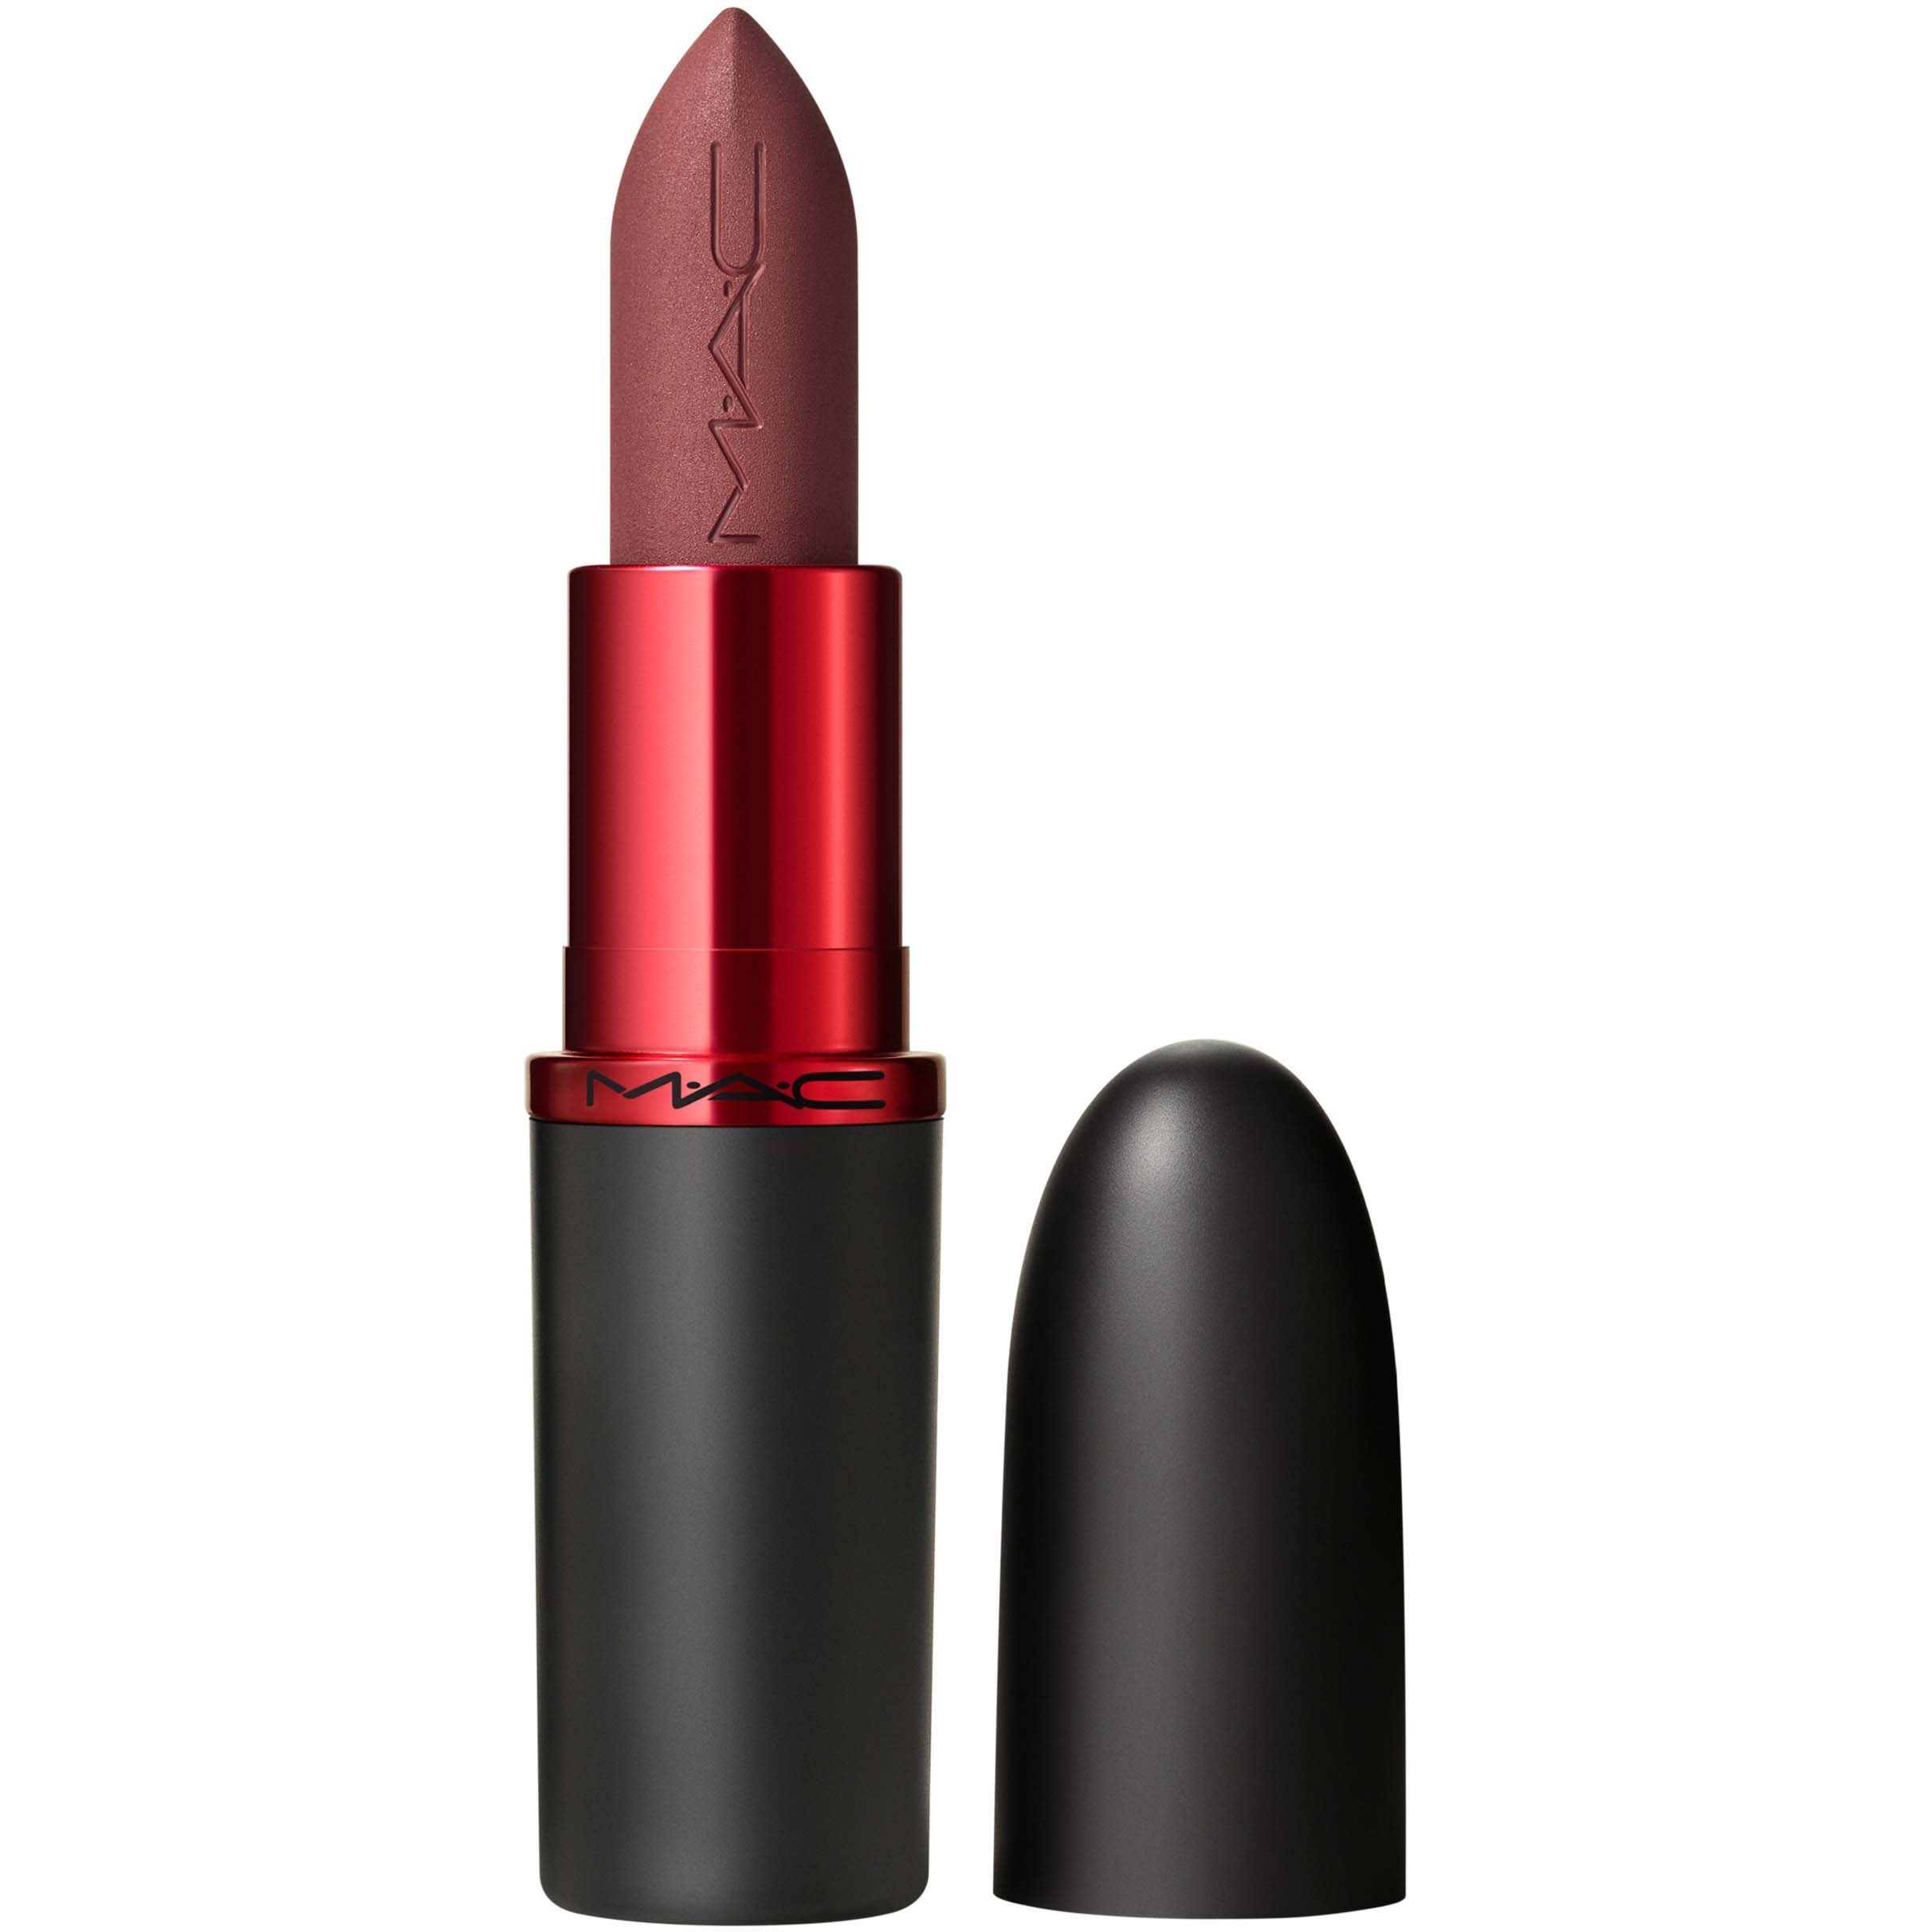 Läs mer om MAC Cosmetics Macximal Viva Glam Lipstick Viva Empowered